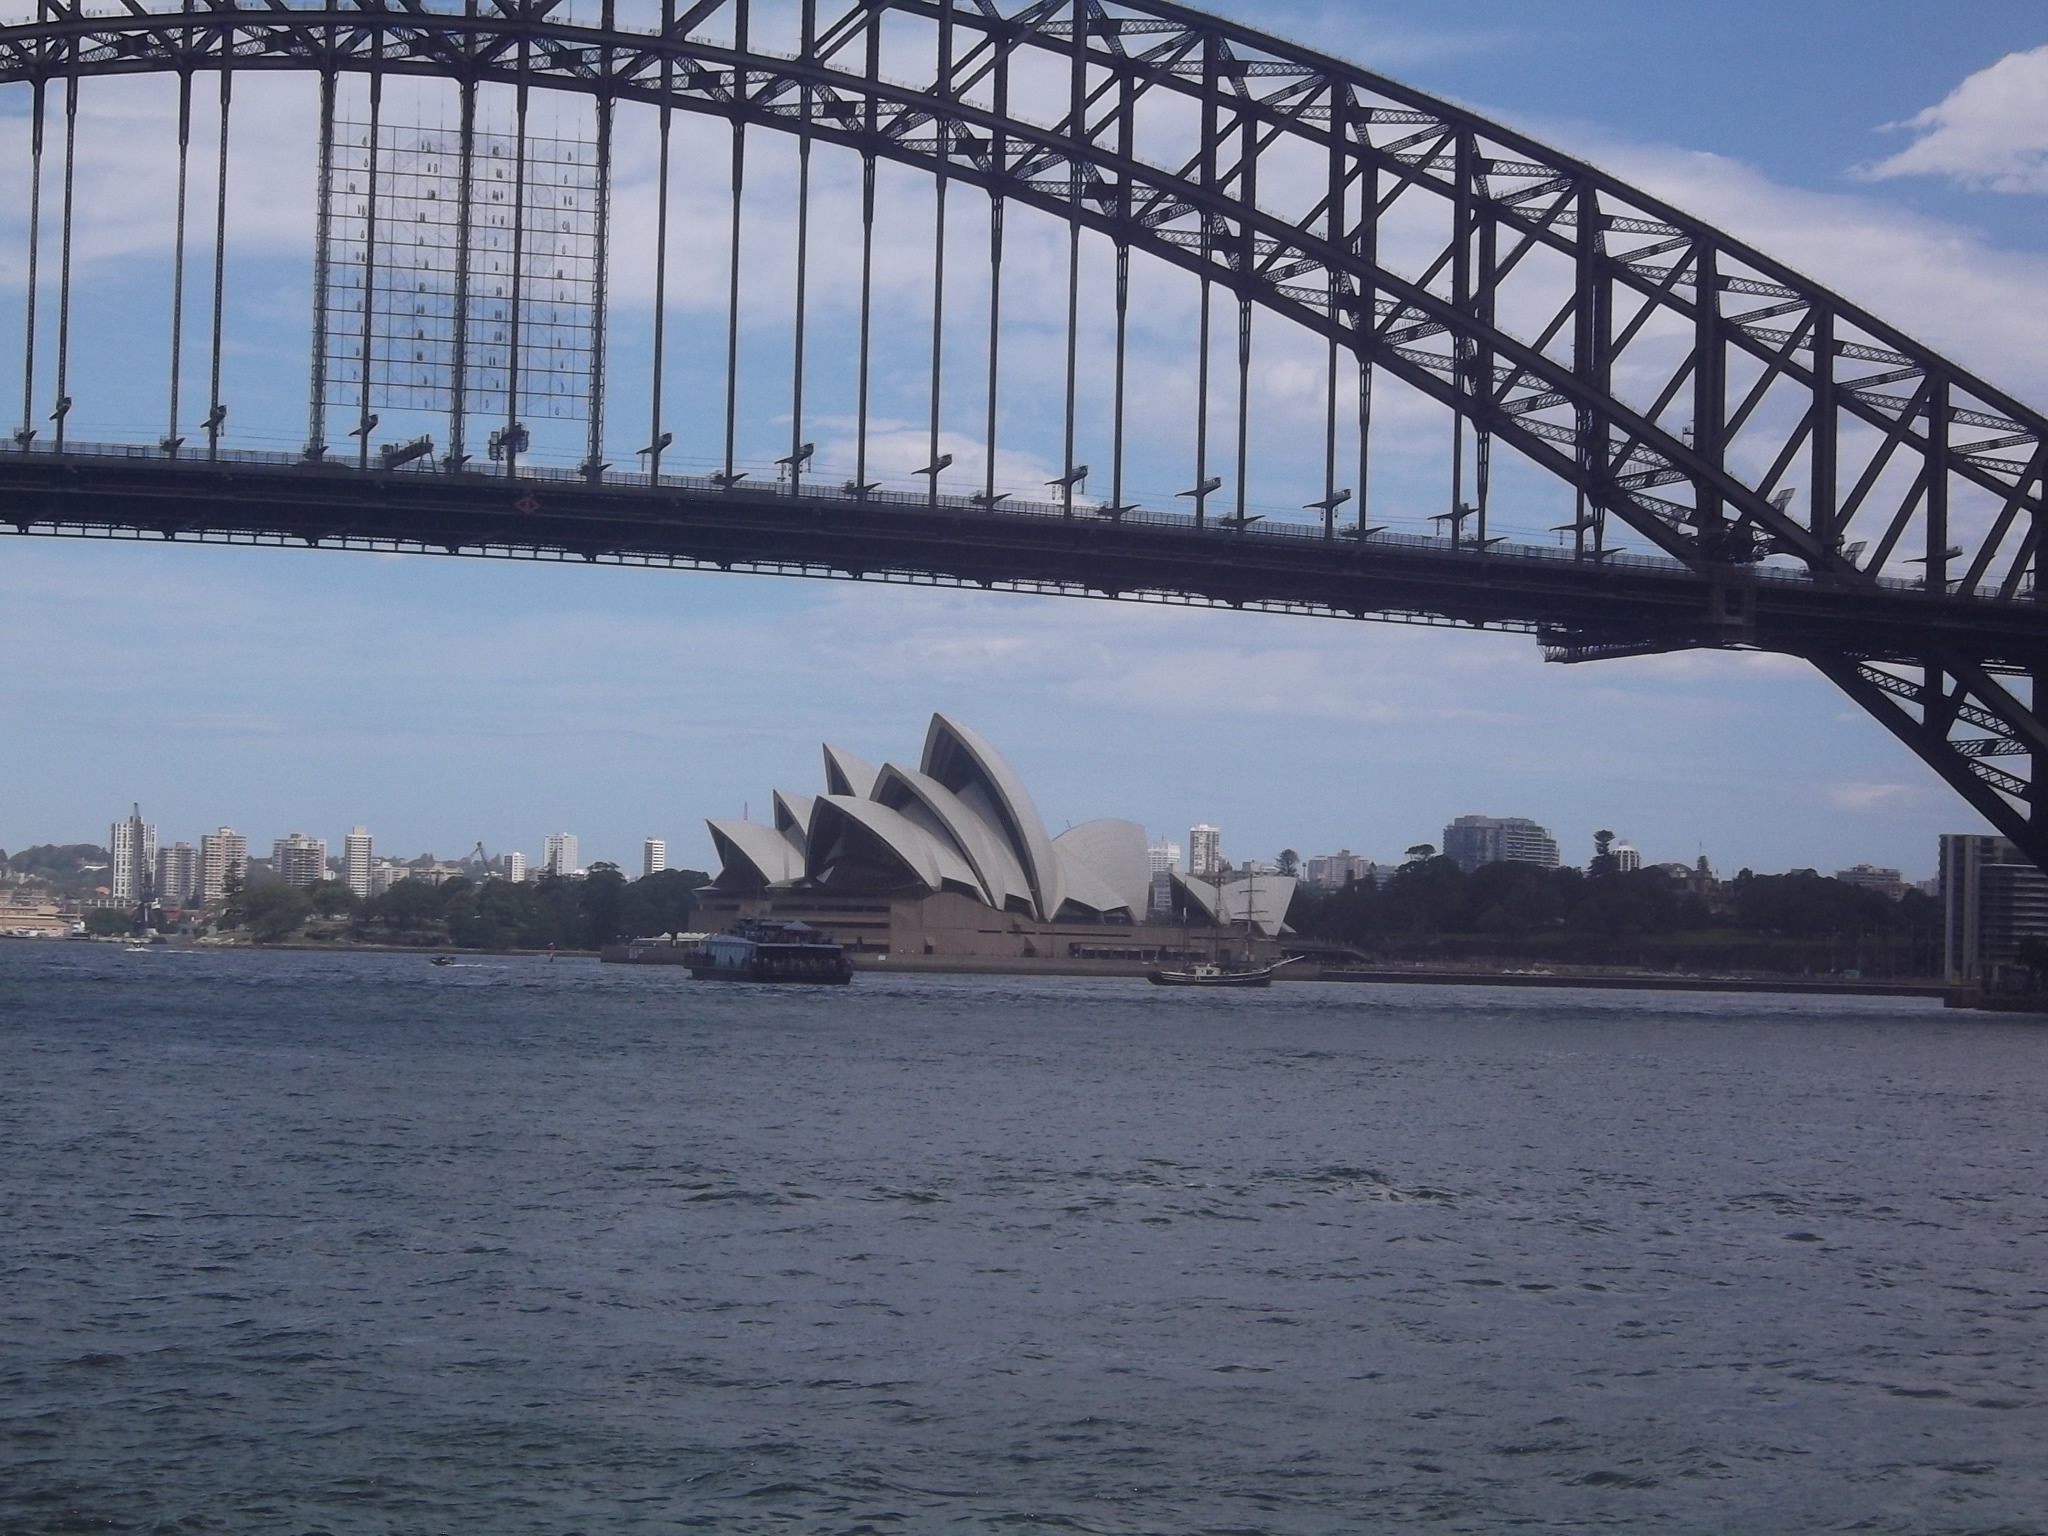 Studiereis Australië en Nieuw-Zeeland 2014